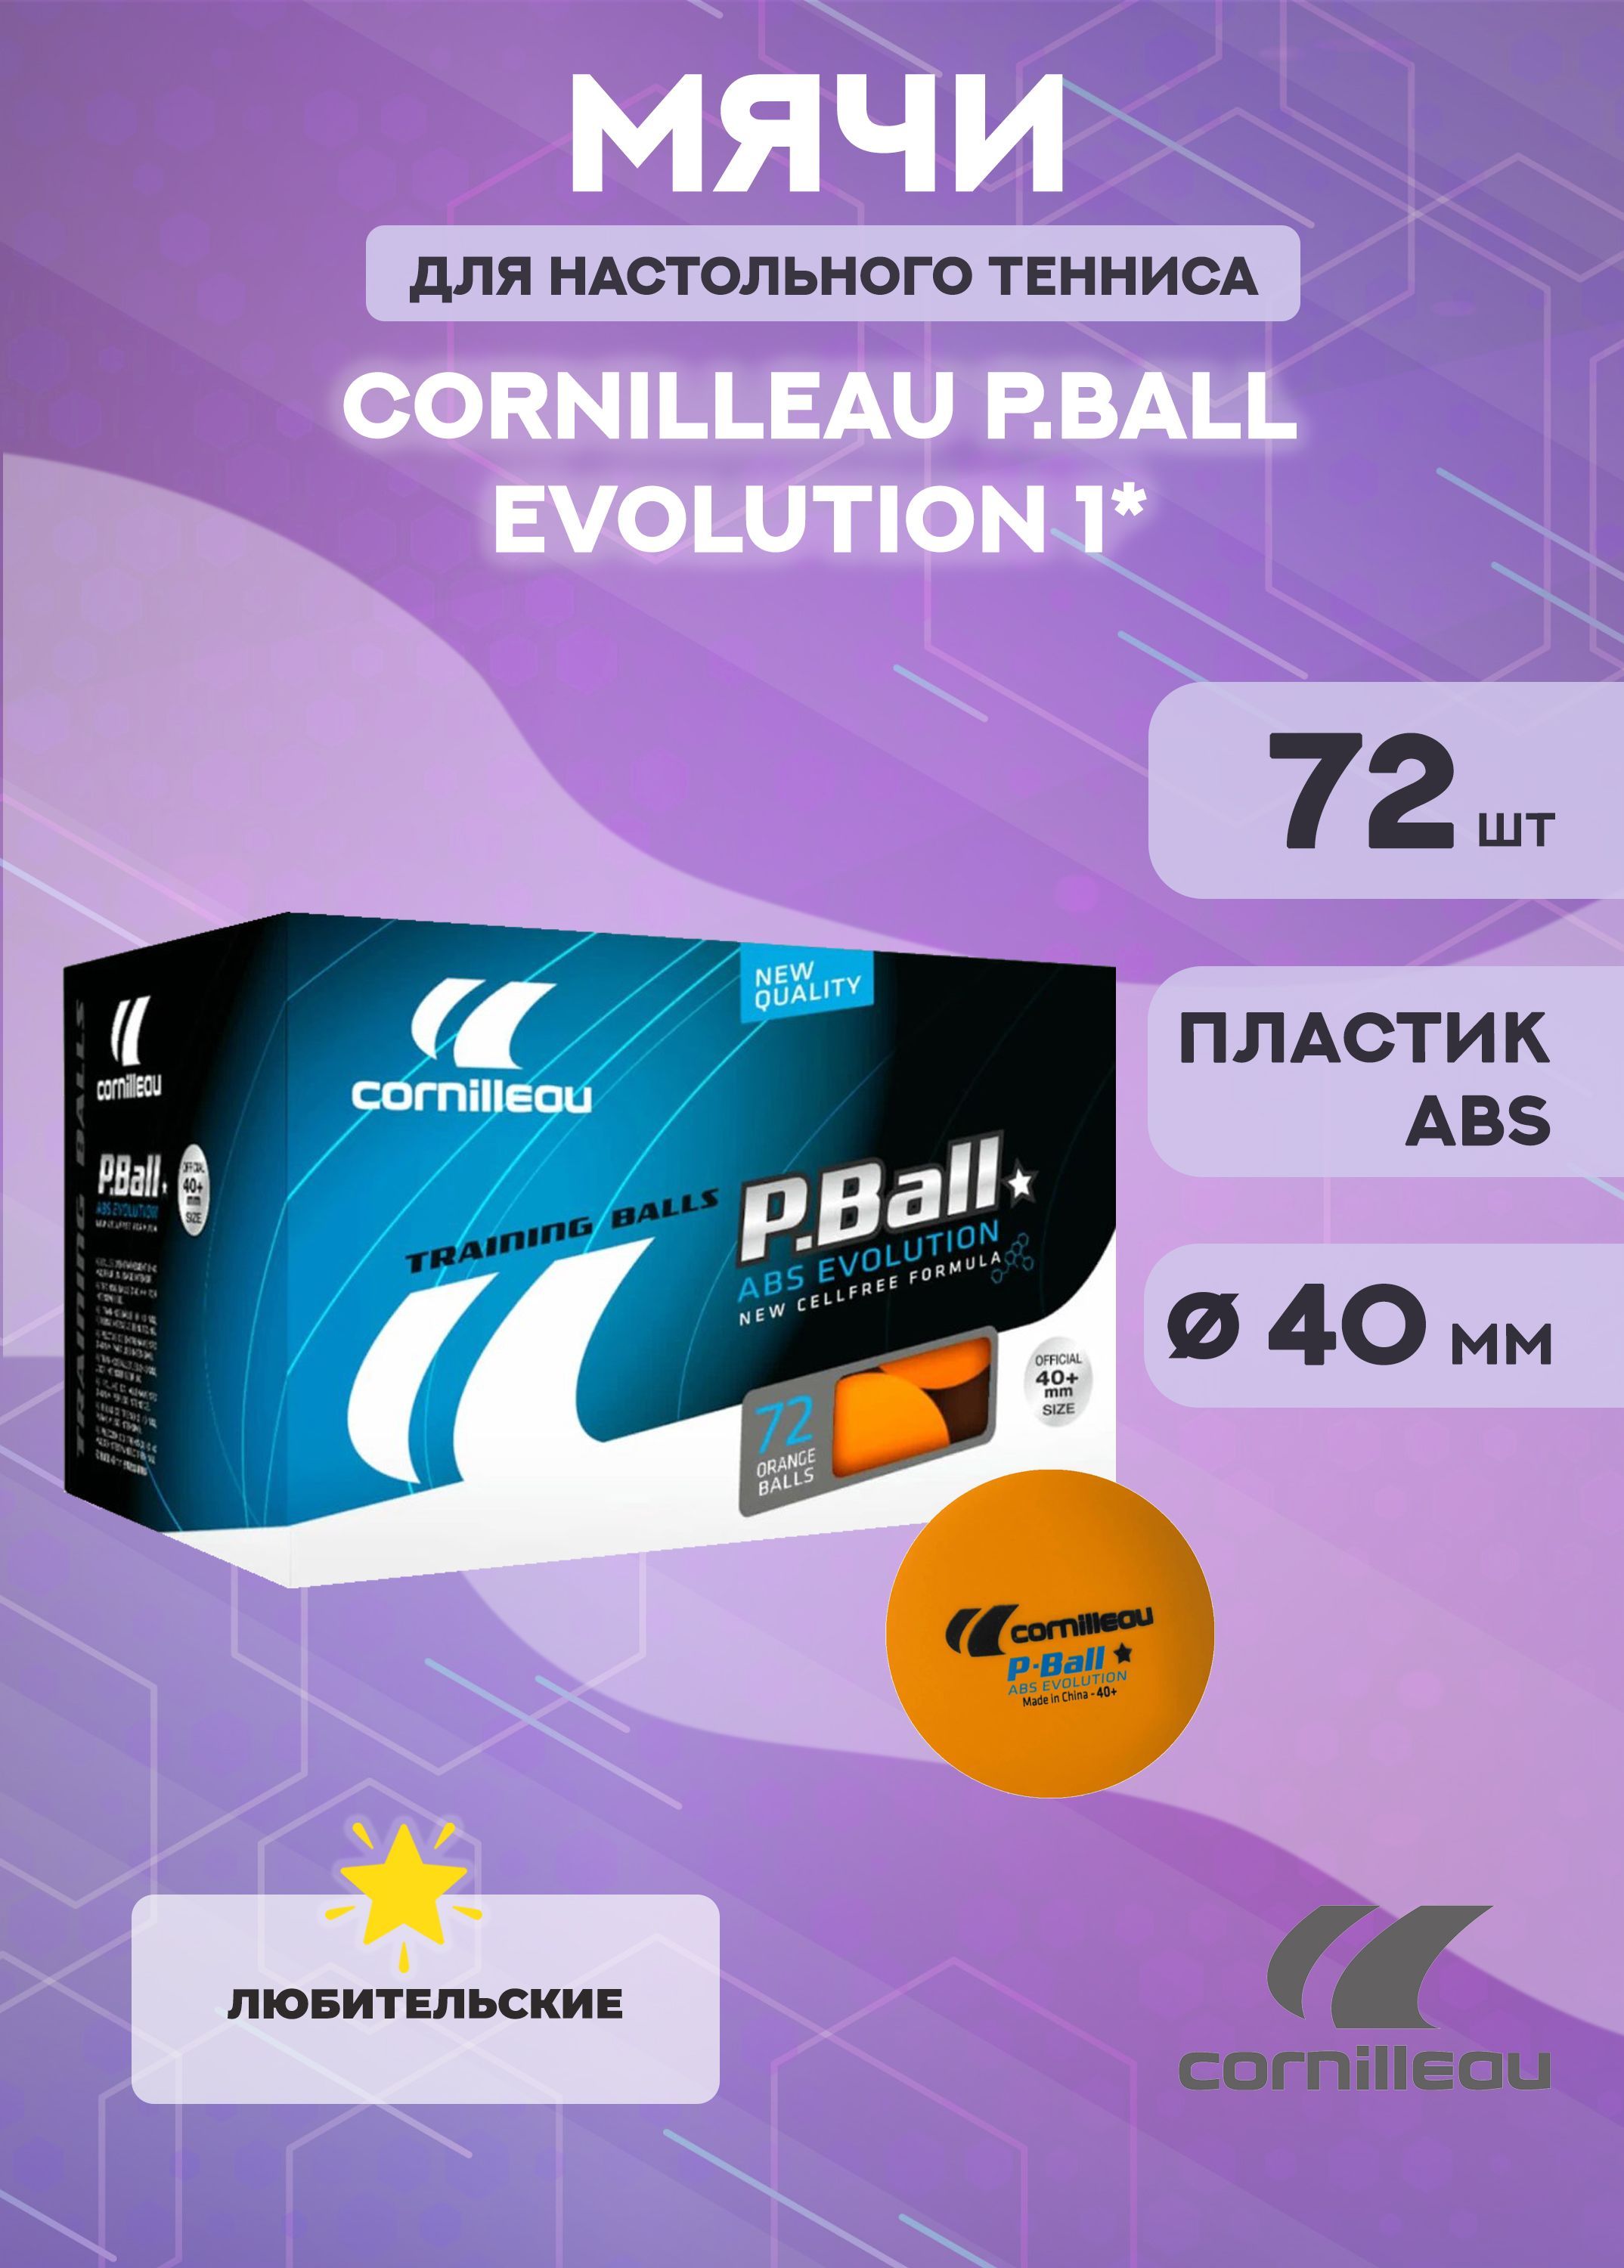 Теннисные мячи Cornilleau P-Ball ABS Evolution 1*, 40+